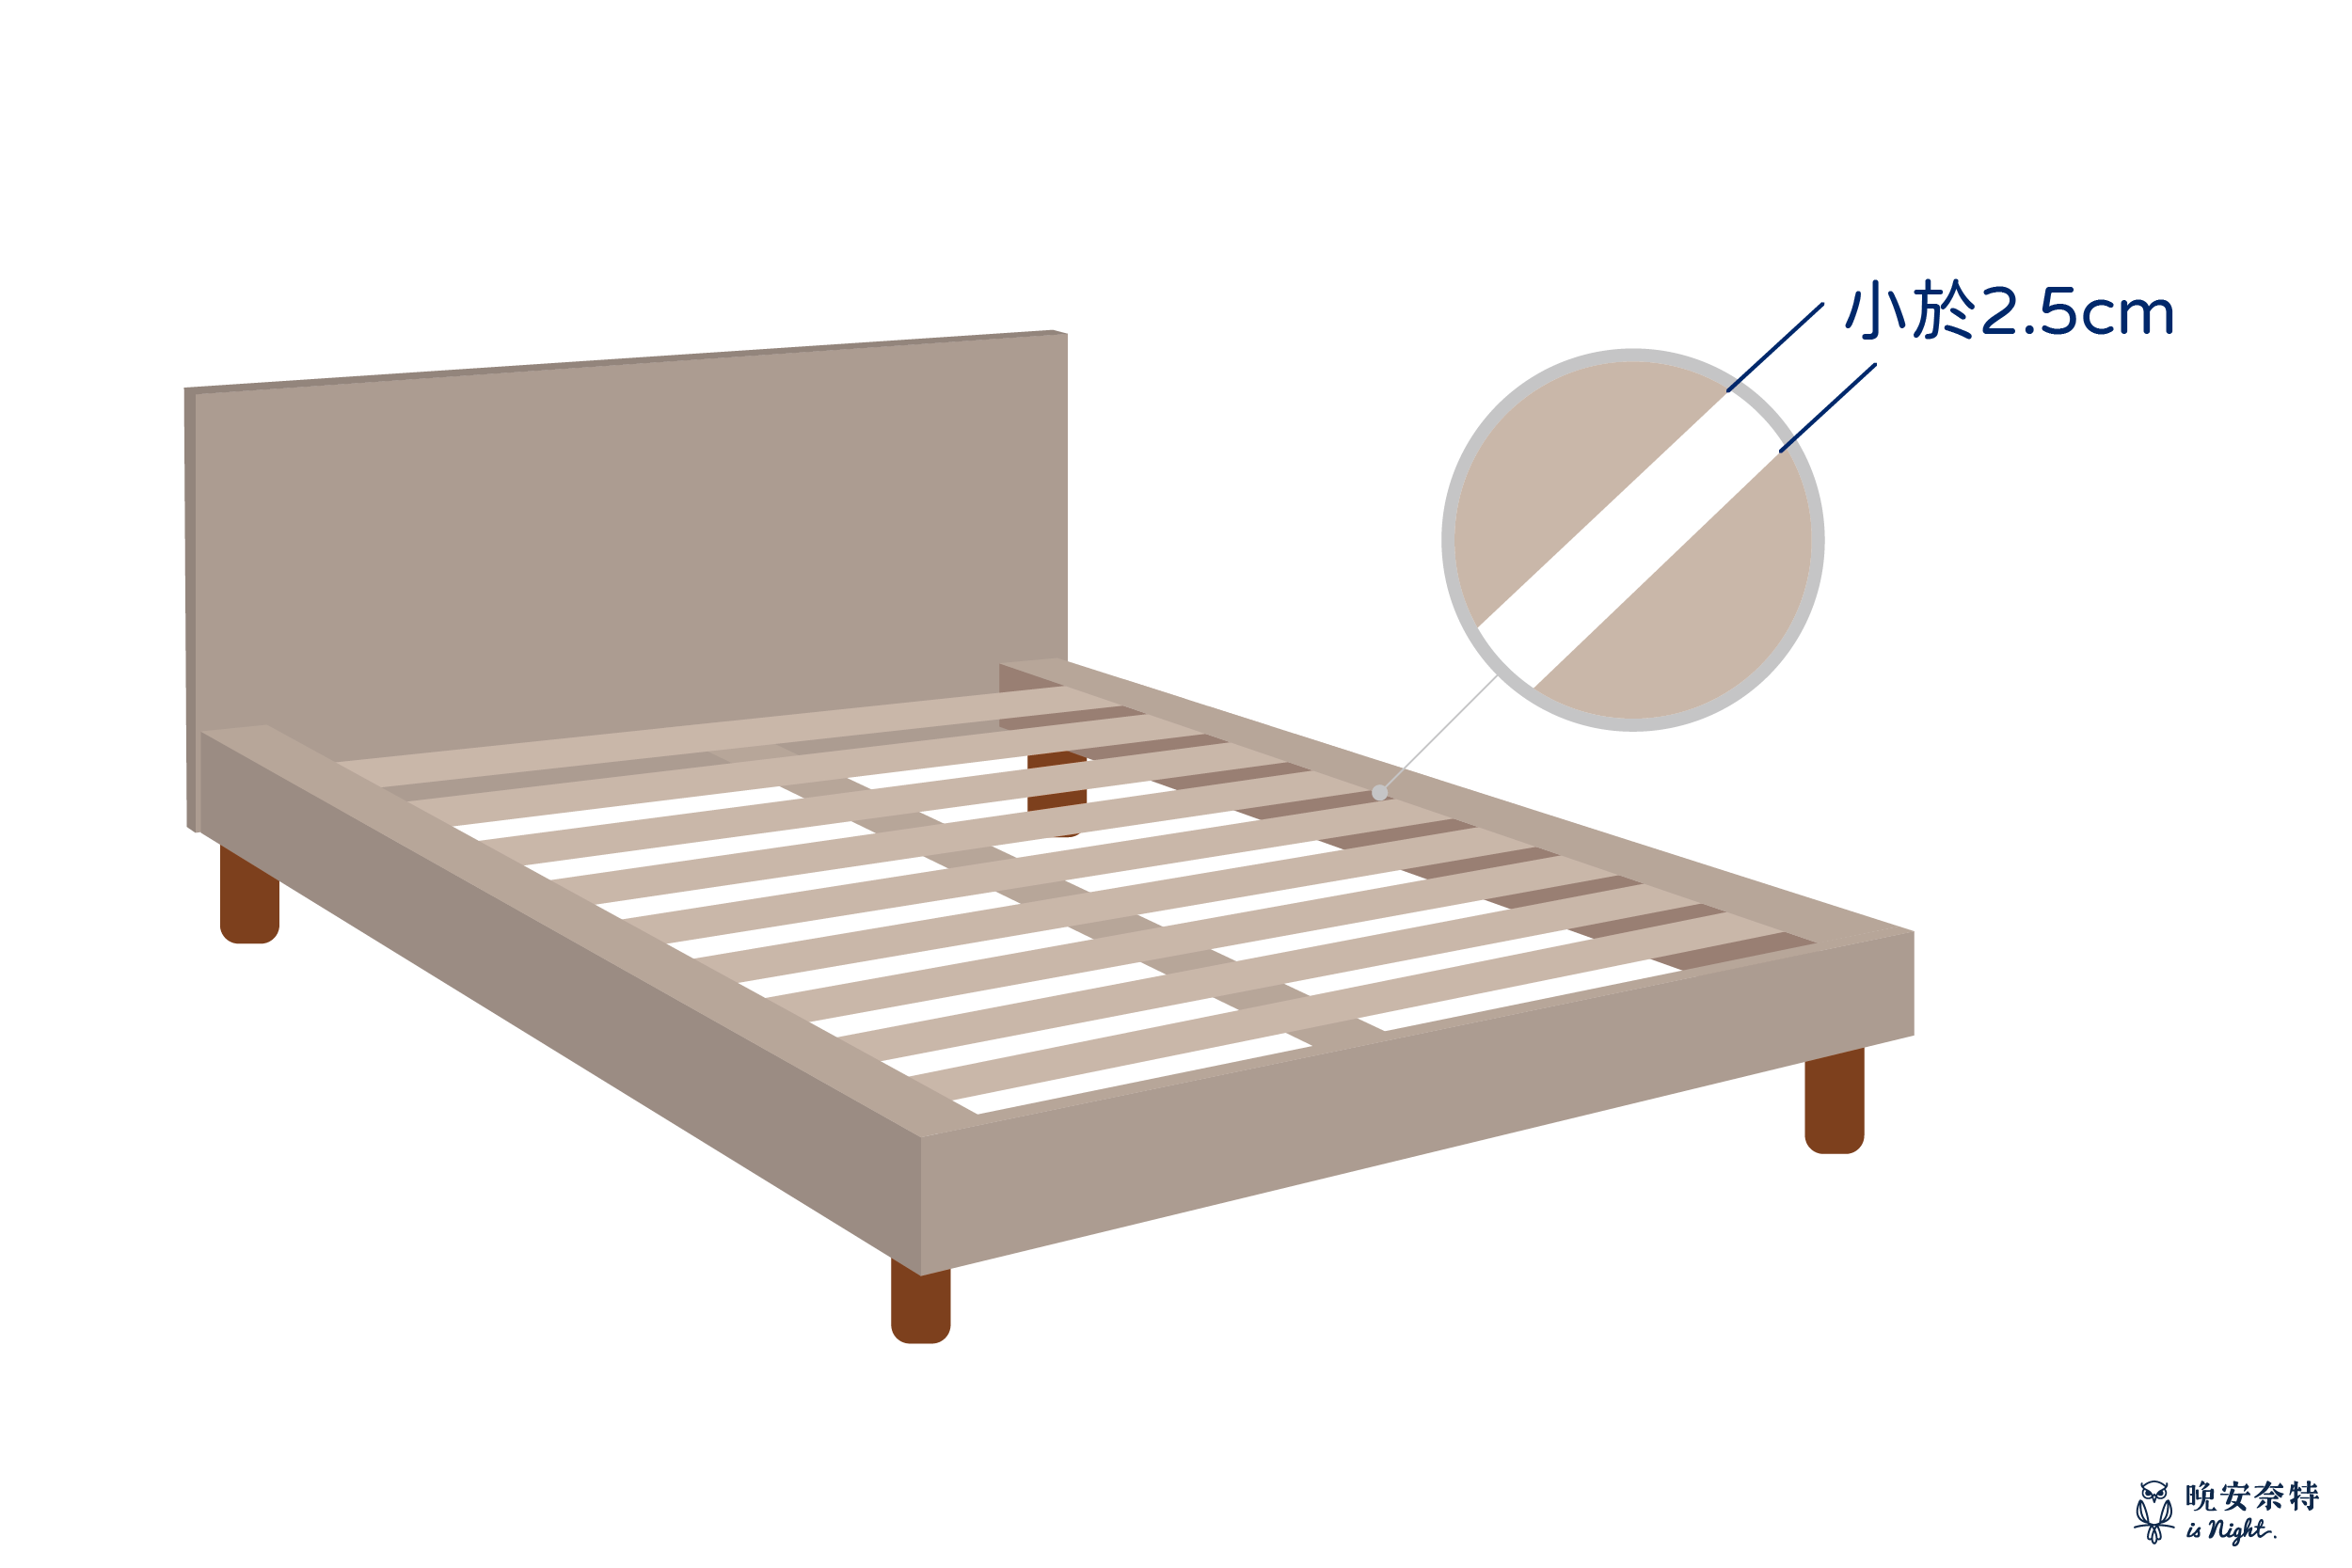 獨立筒床墊不建議使用具有間隙的排骨式床架，若真的要使用則建議間隙要小於床墊的獨立筒直徑。